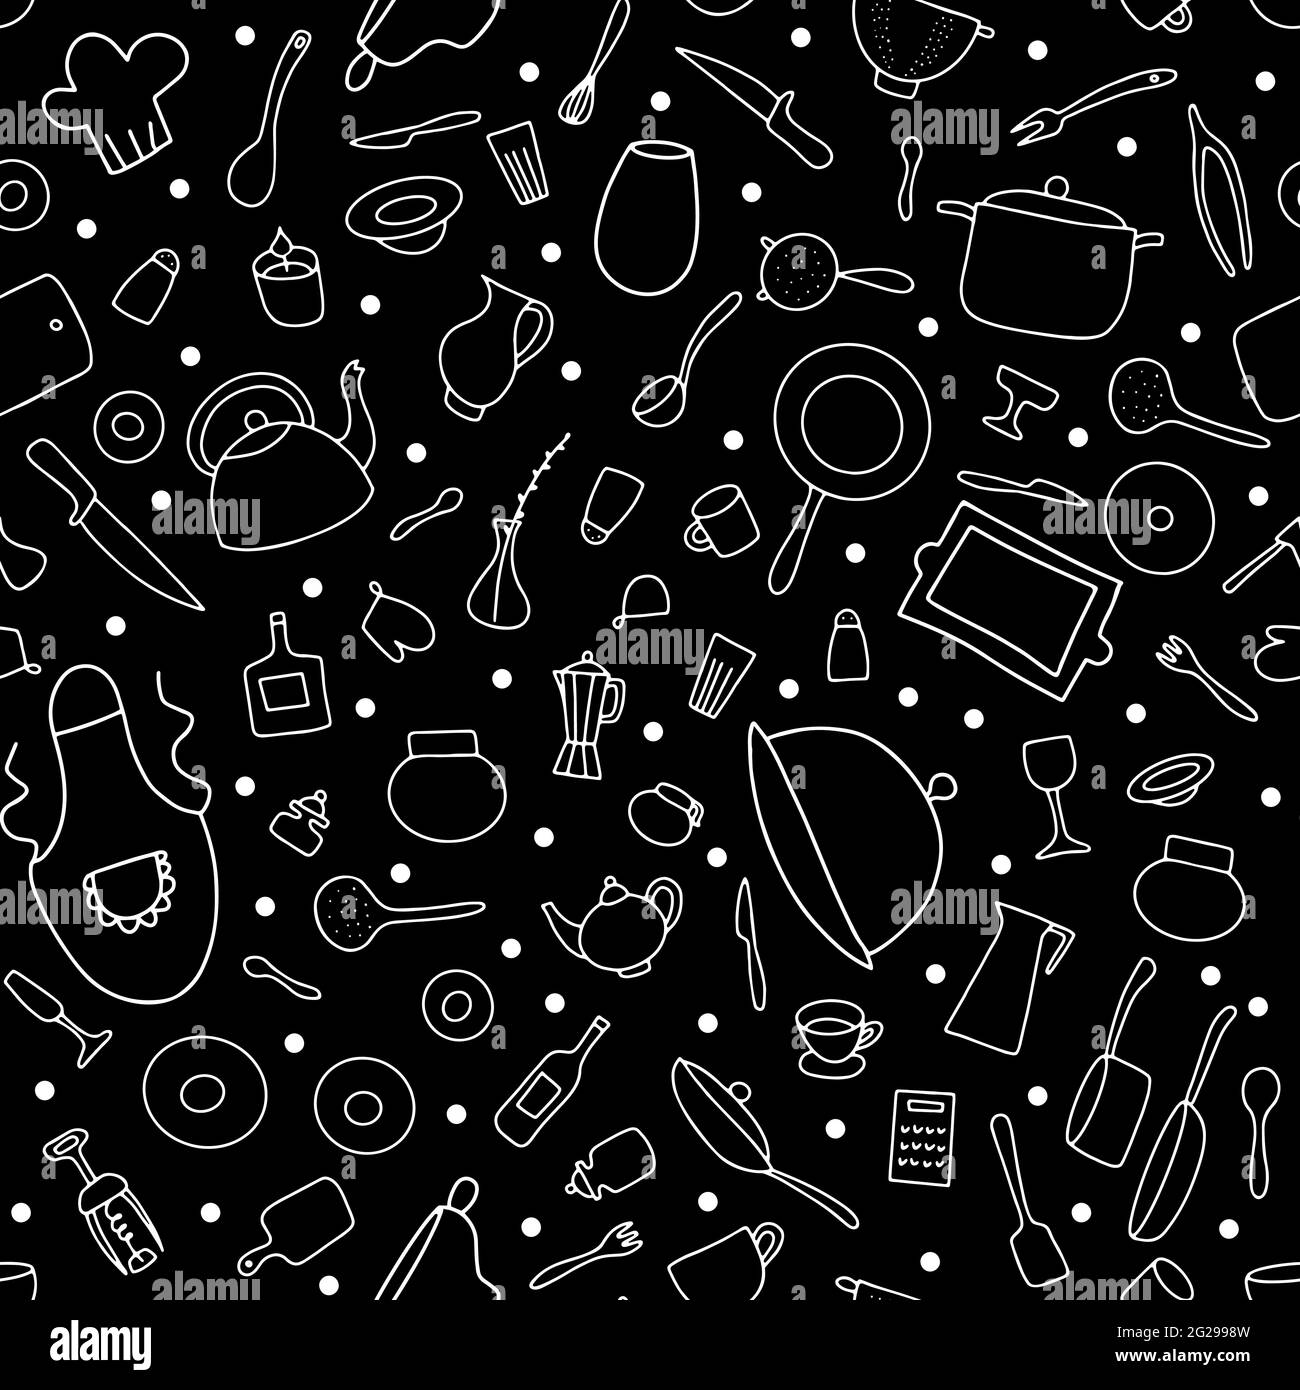 Nahtlose Doodle Geschirr Vektor-Muster. Skizzieren Sie Gerichte auf schwarzem Hintergrund. Kochtöpfe, Pfannen, Teller, Besteck, Wasserkocher, Kaffeetasse, Köche Stock Vektor